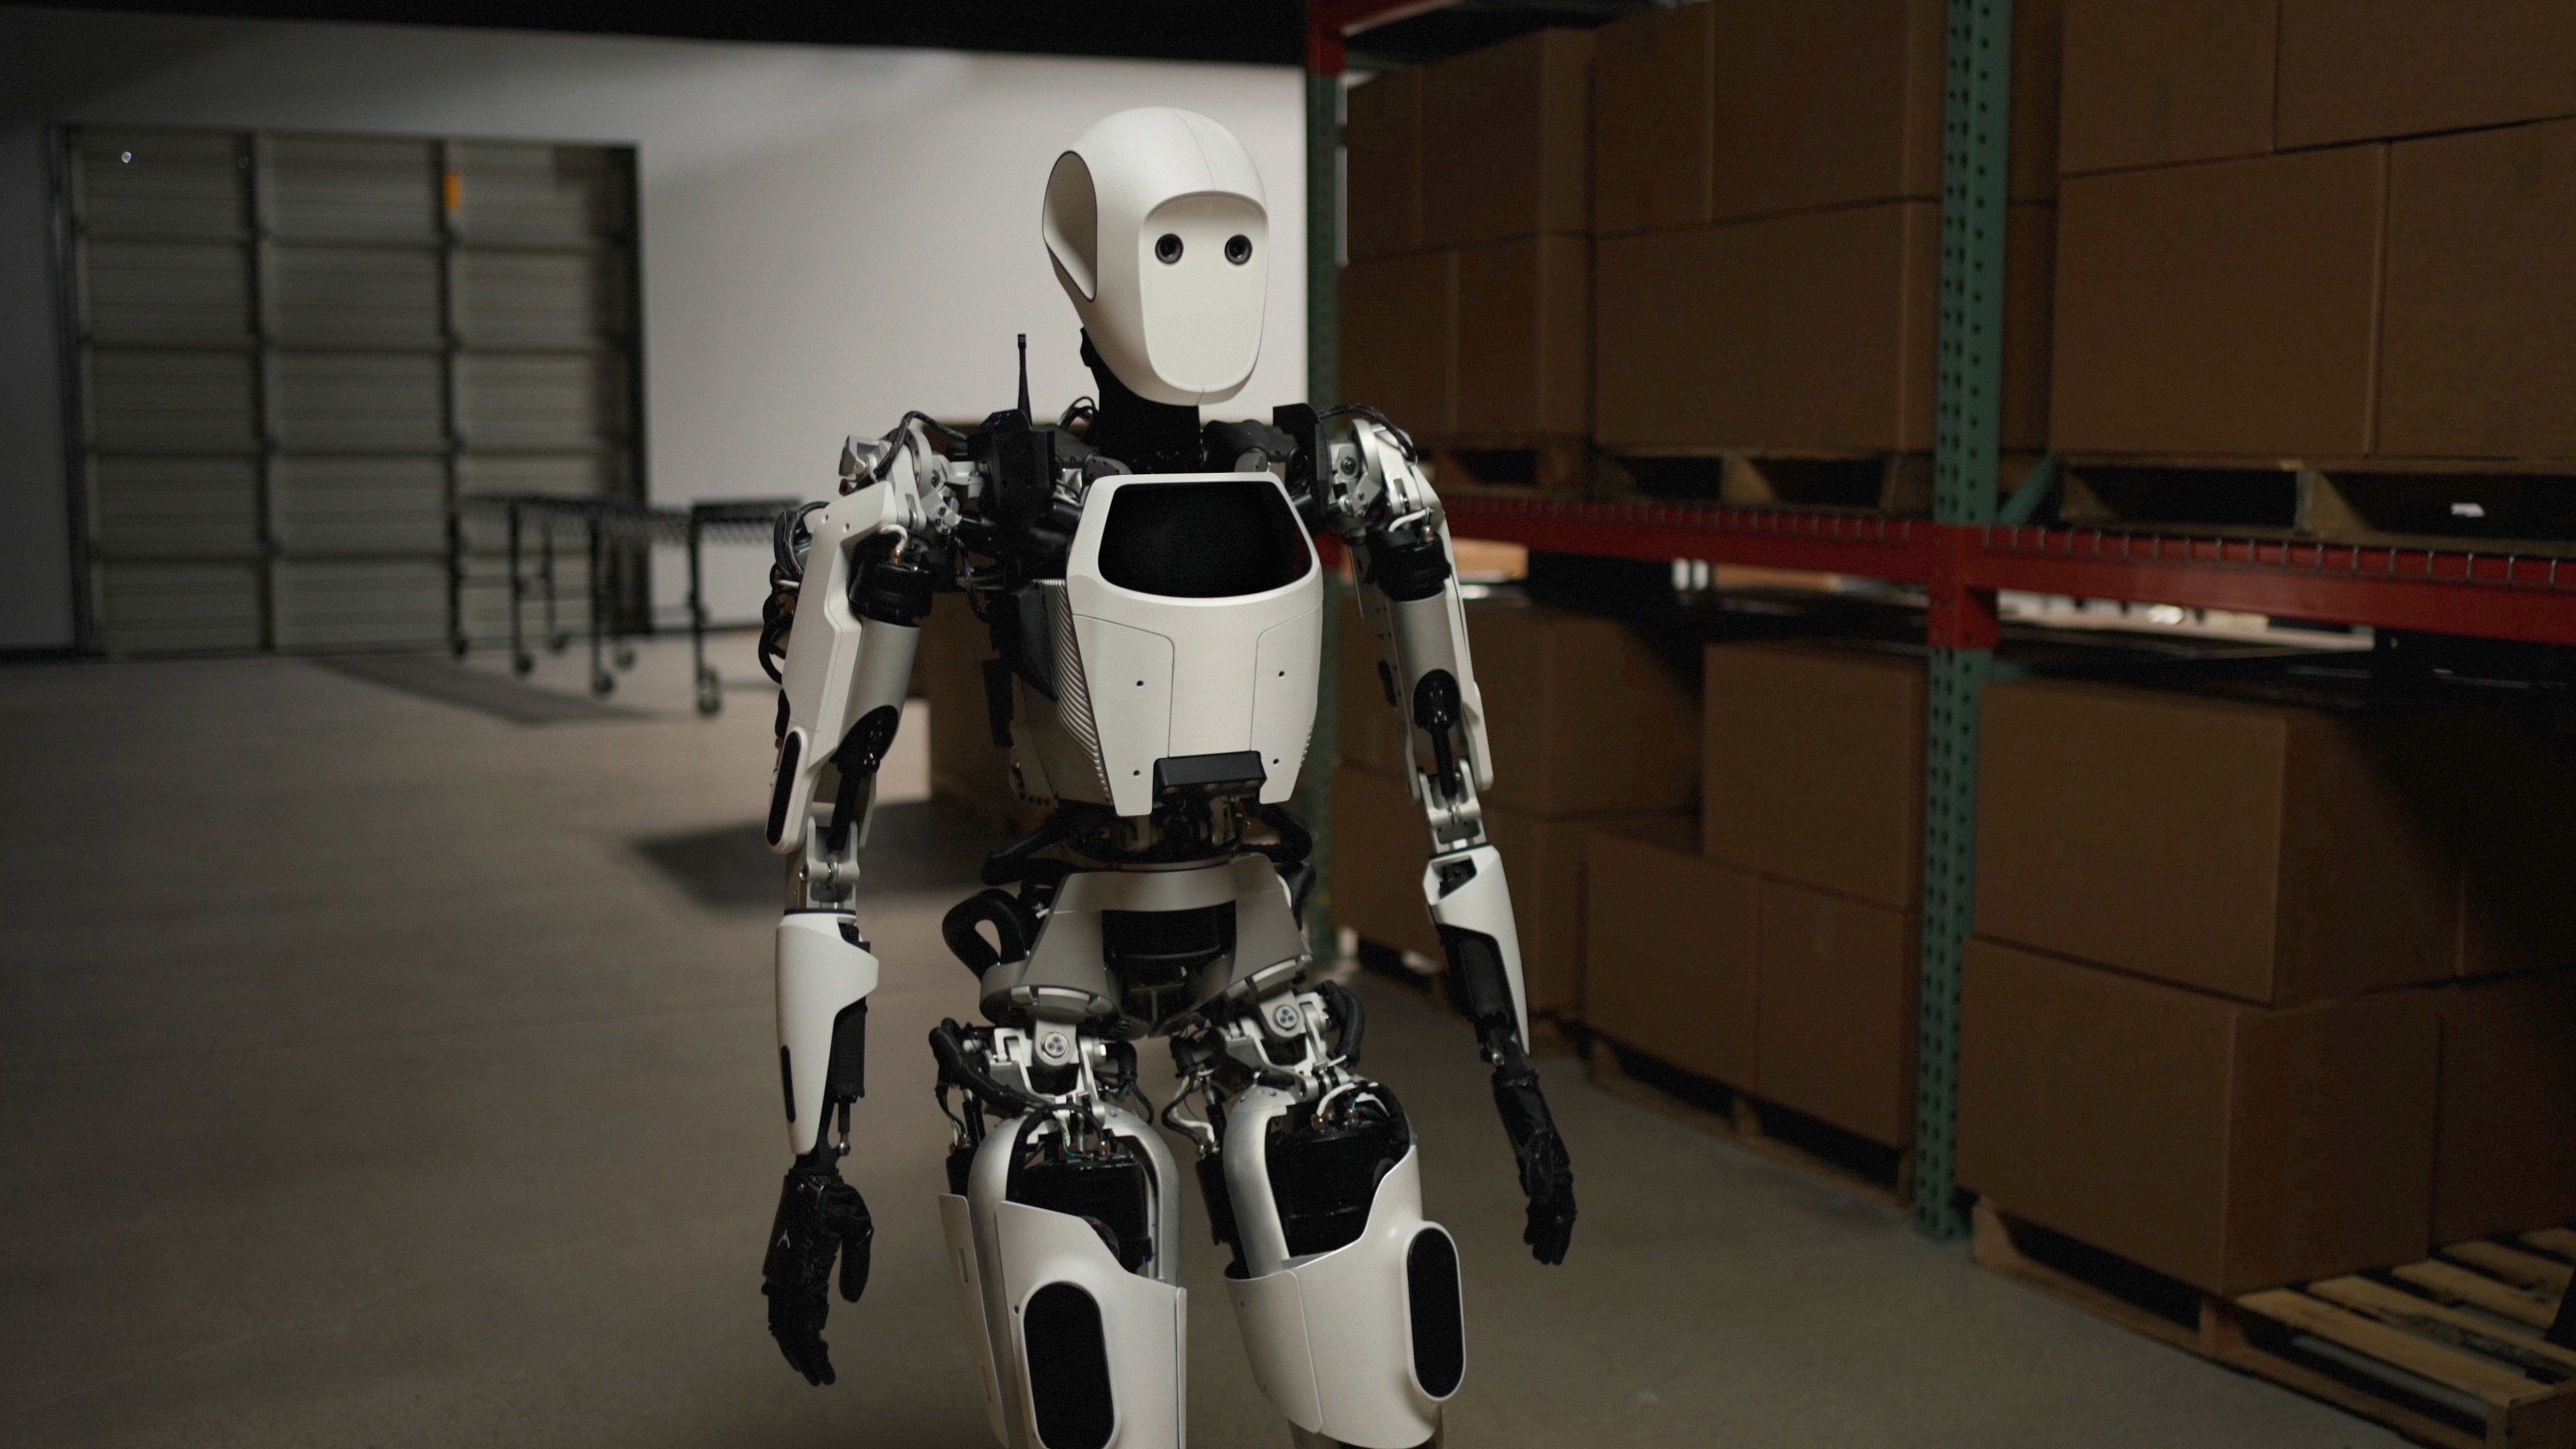 I, Robot”: What Do Robots Dream of?